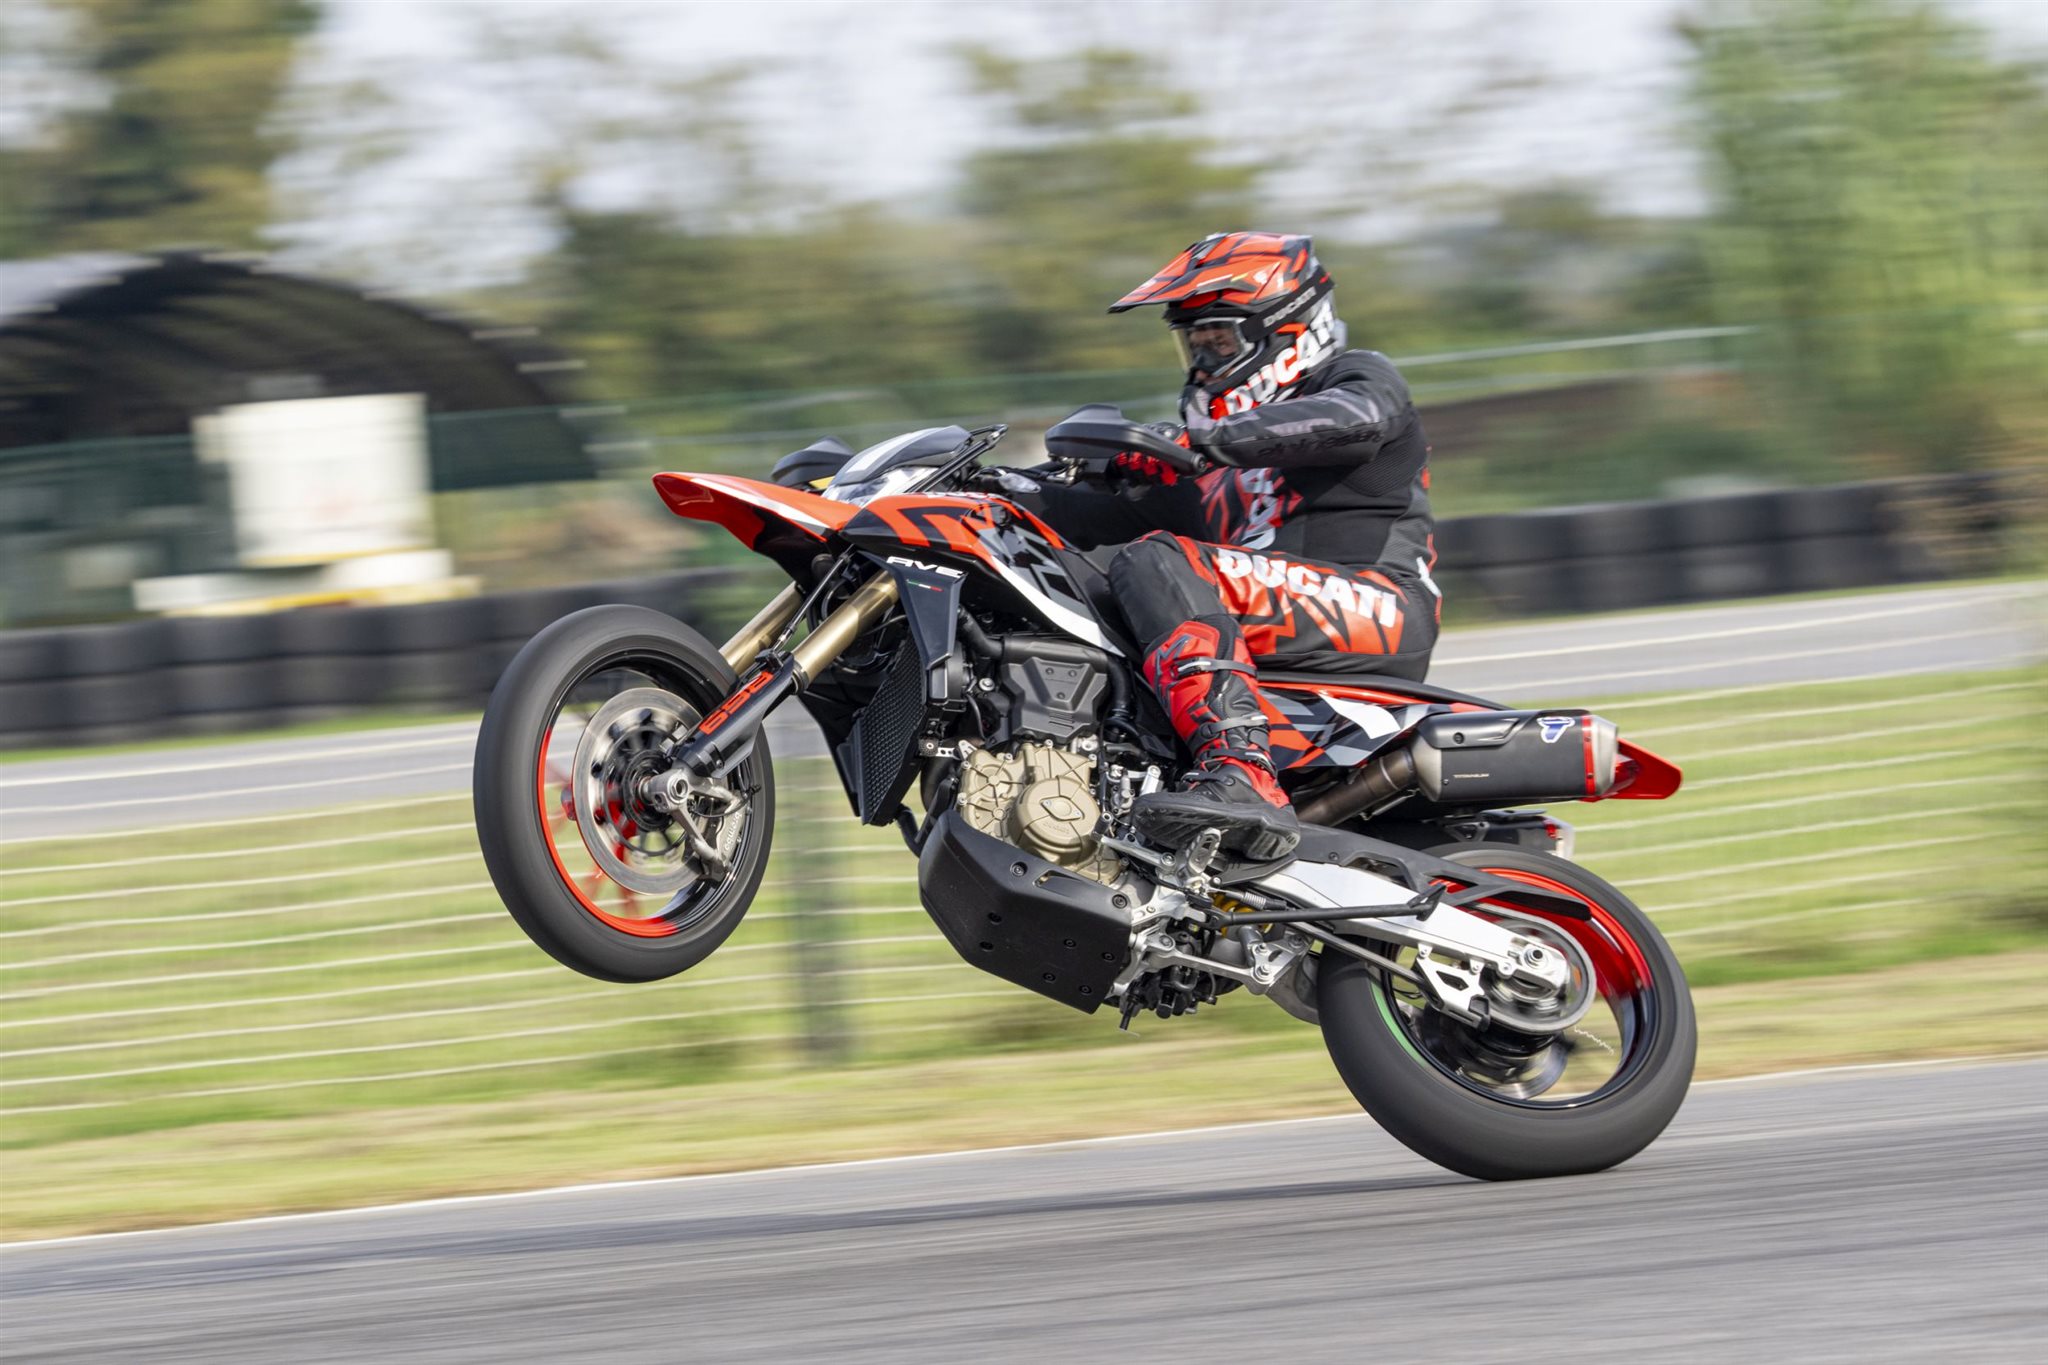 Motorrad Vergleich Honda CRF 450 L 2019 vs. Ducati Hypermotard 698